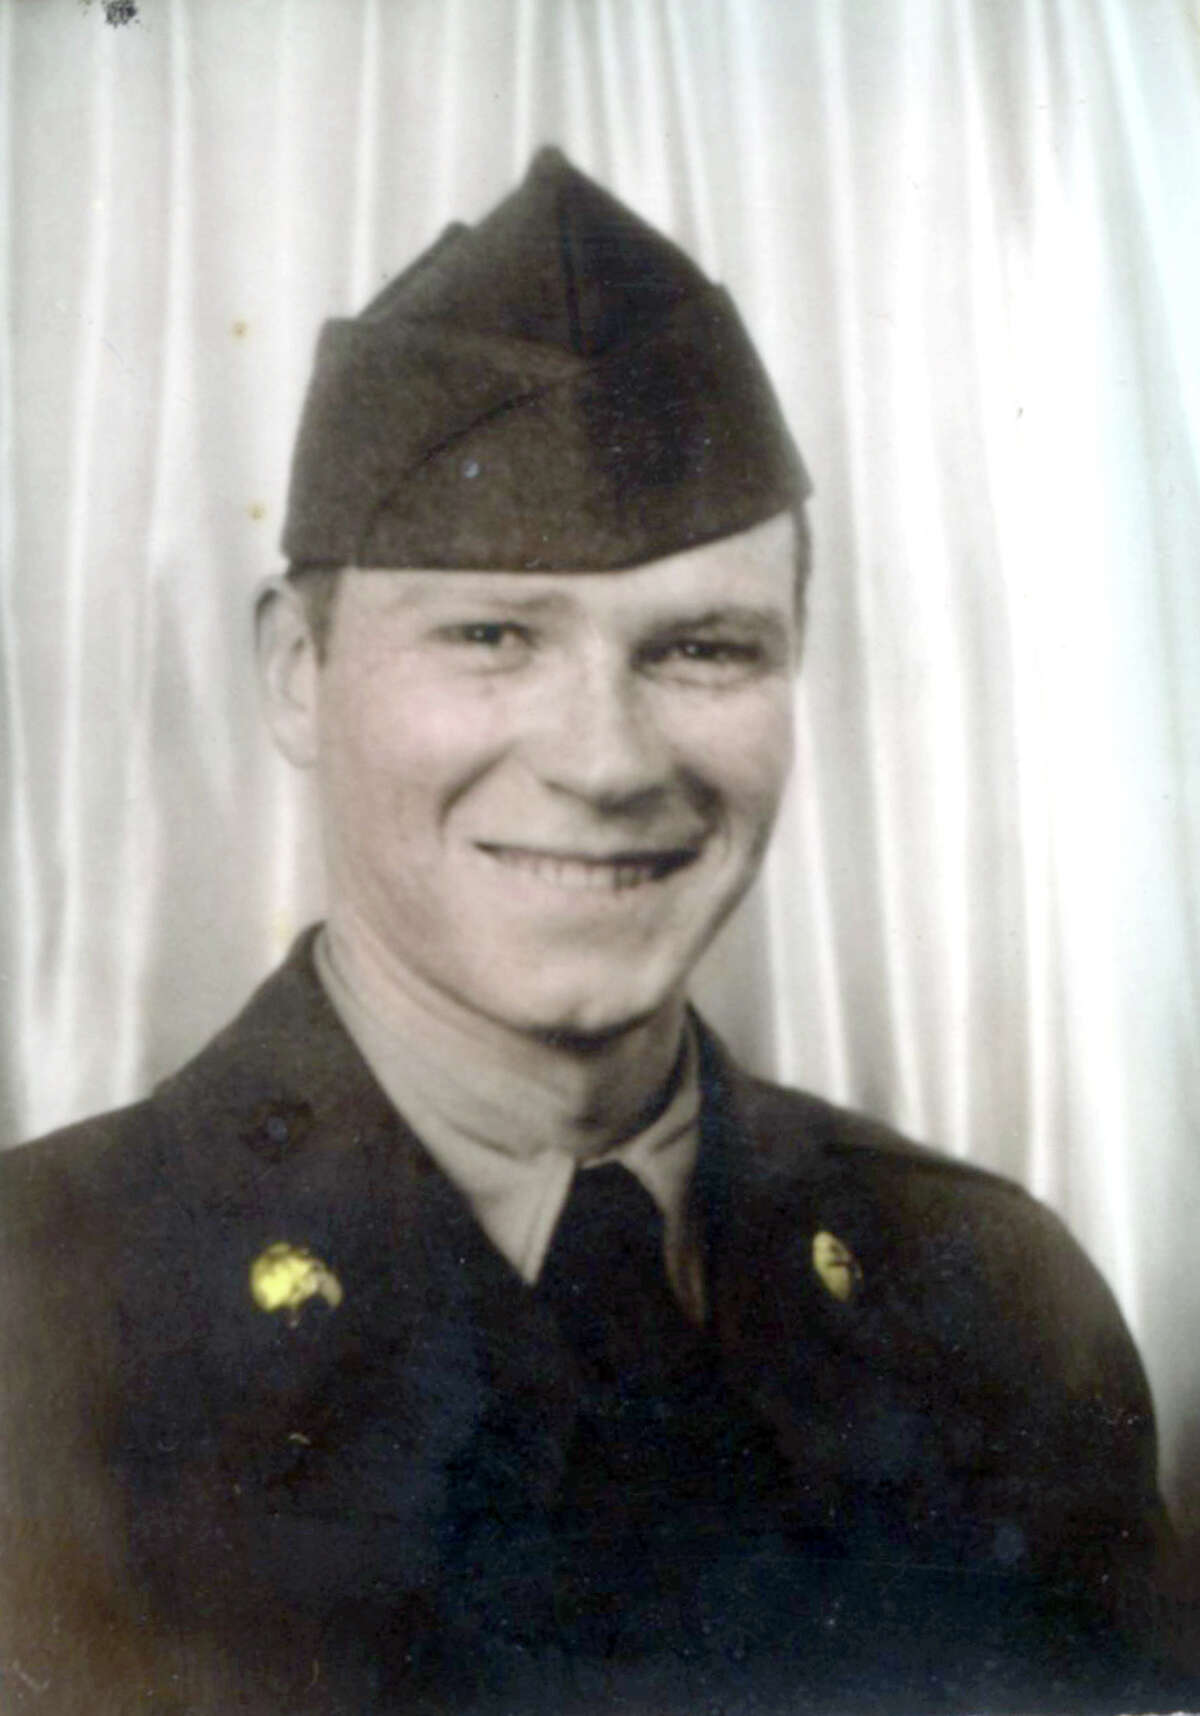 Lyle Adams, CPL, U.S. Army